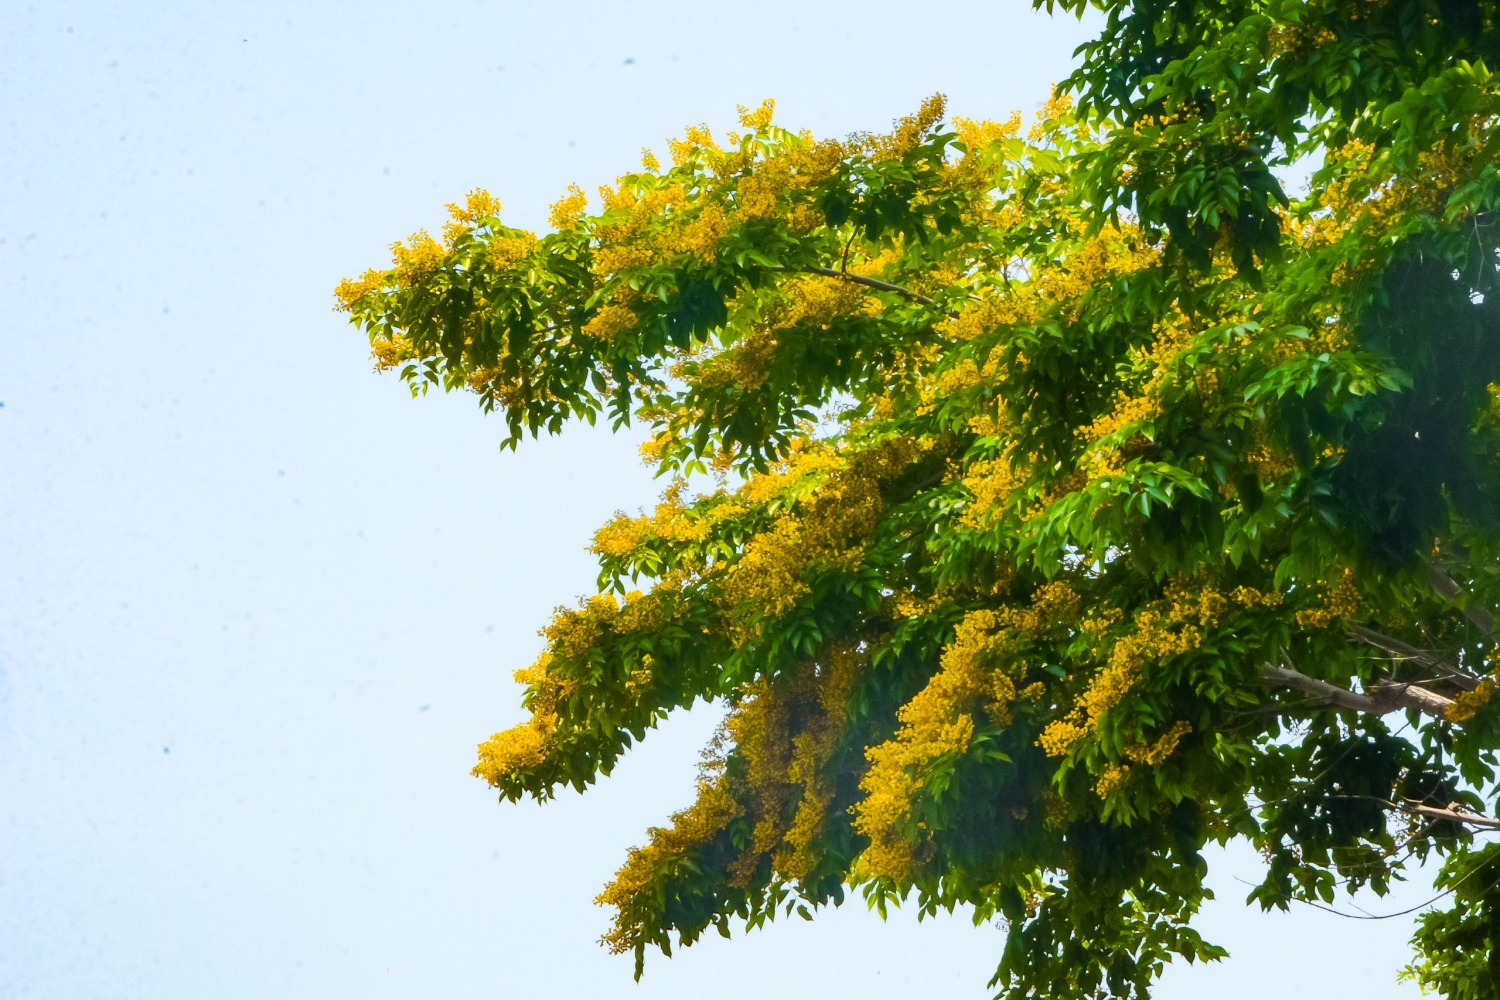 Ngắm hoa sưa nở vàng rực đường phố Đà Nẵng